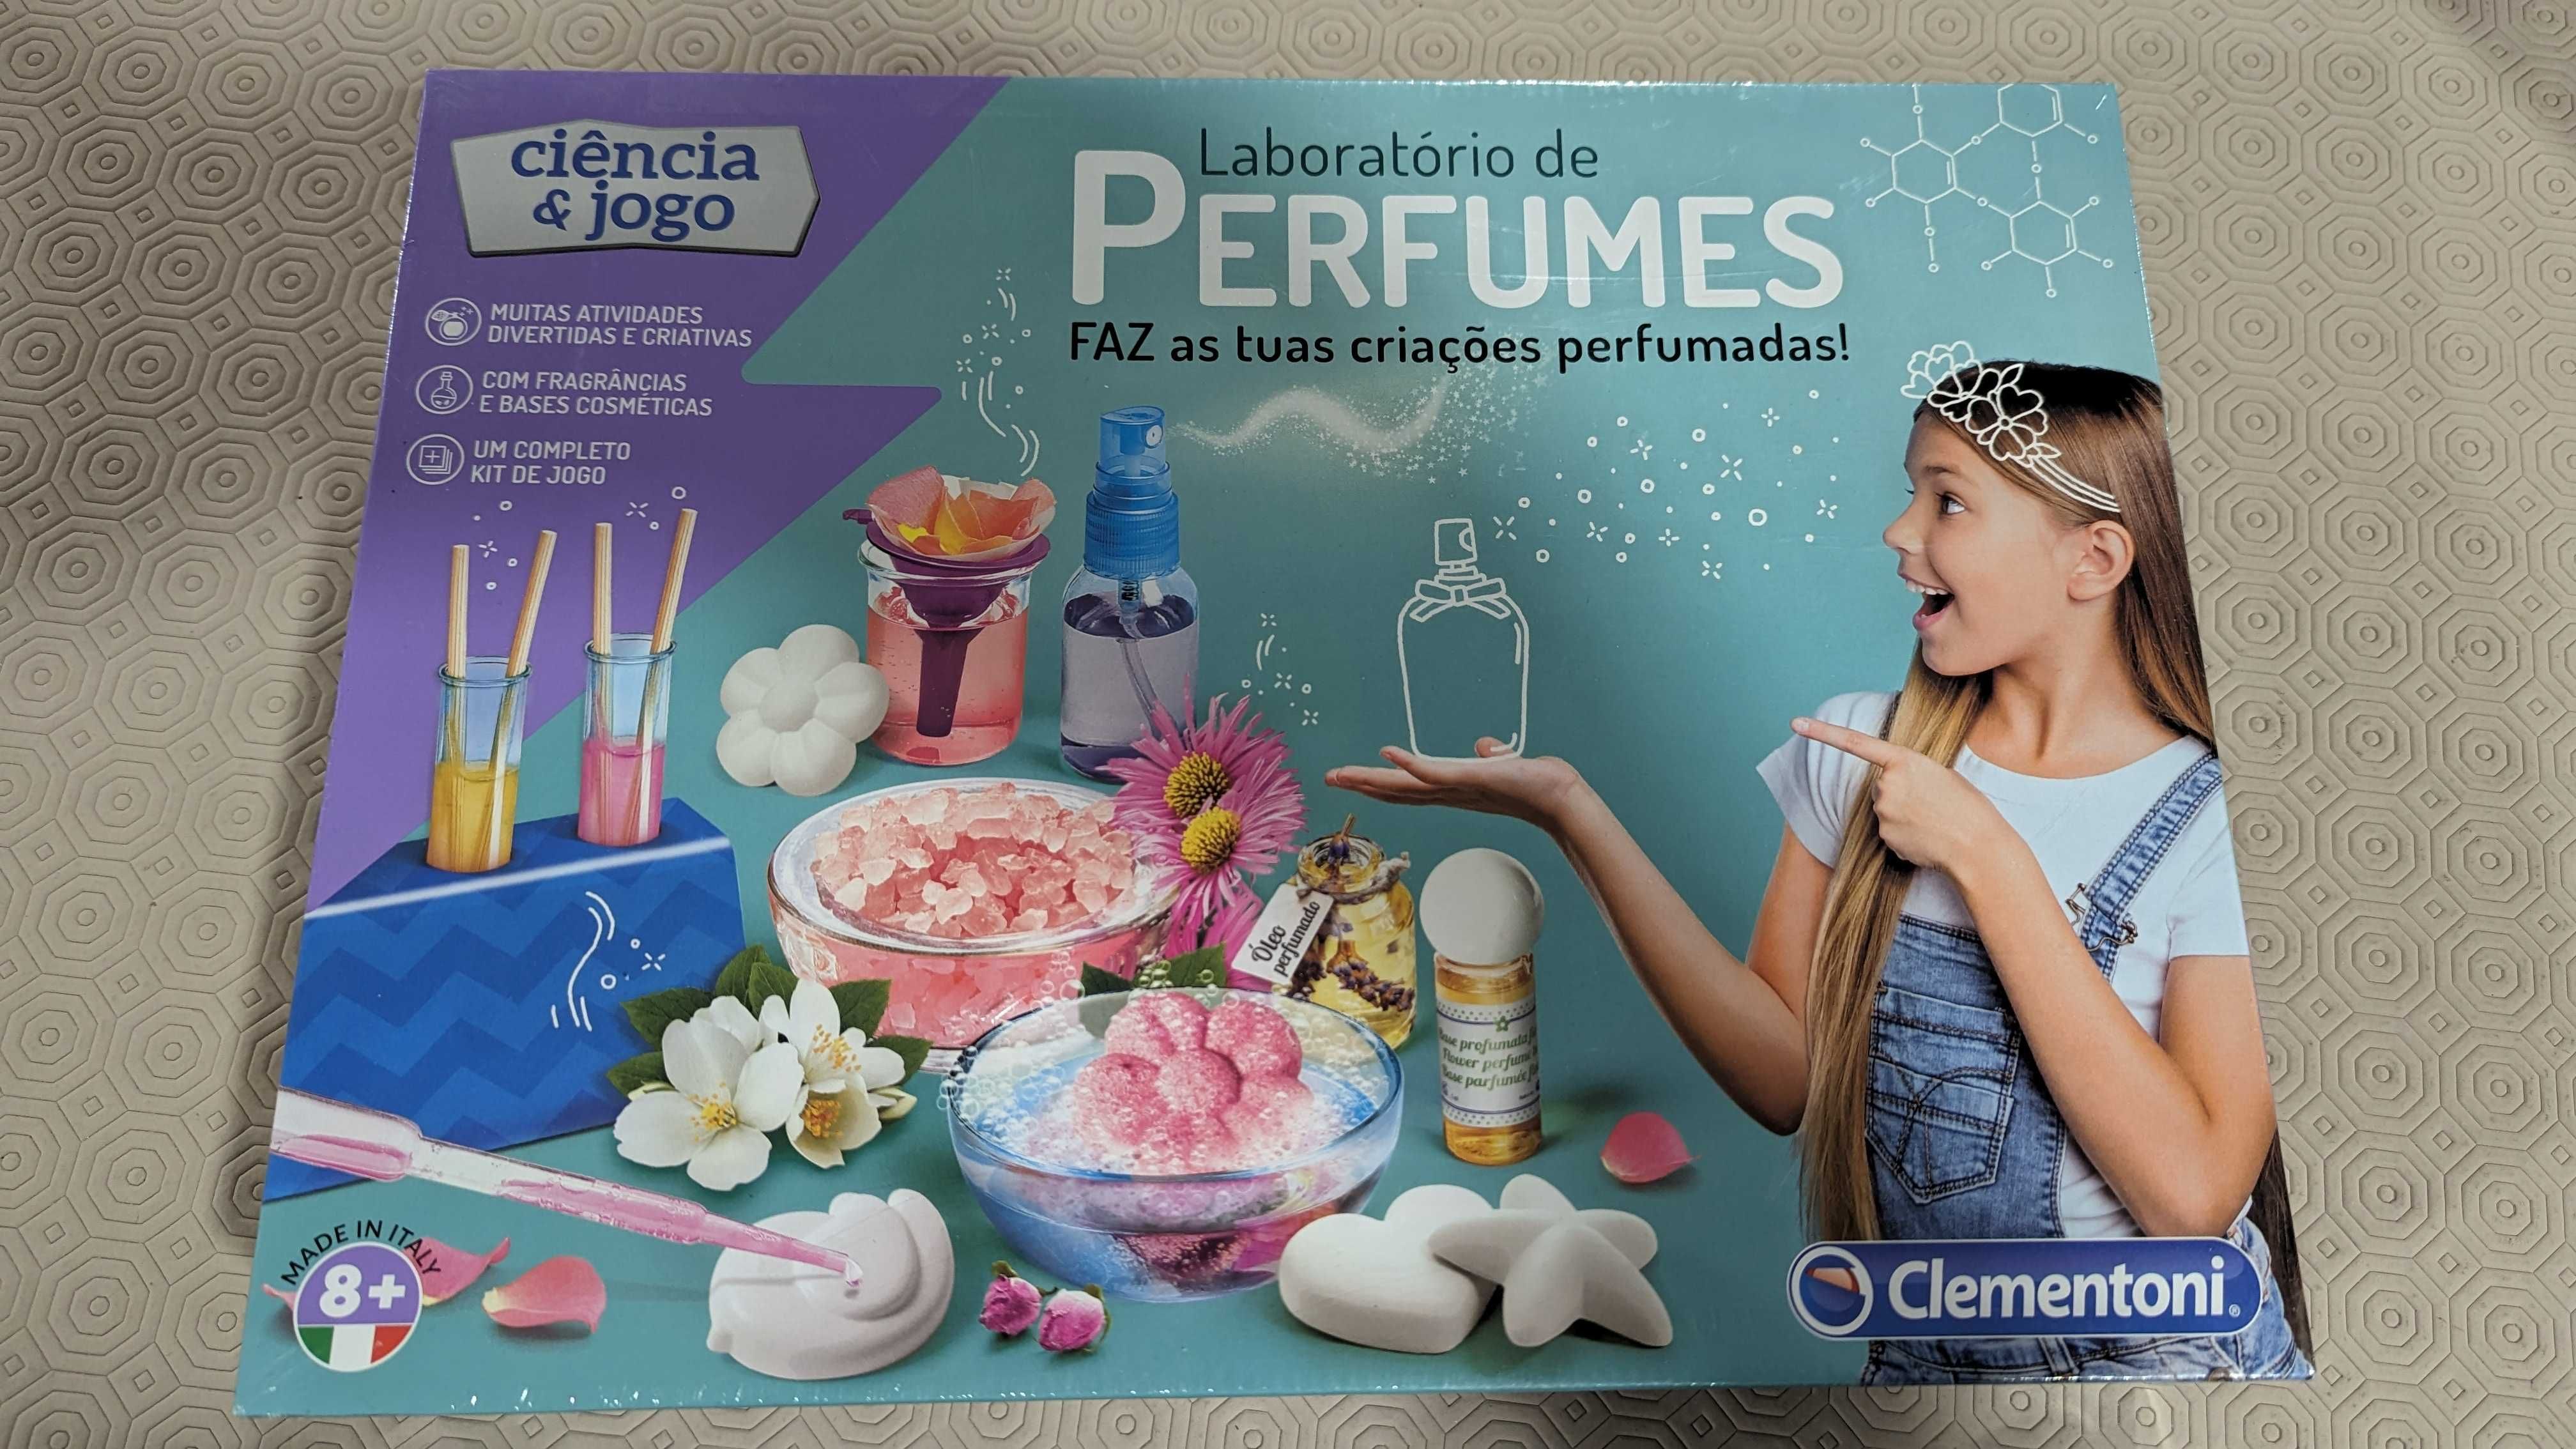 Jogo de ciências "Laboratório de Perfumes" (Clementoni)